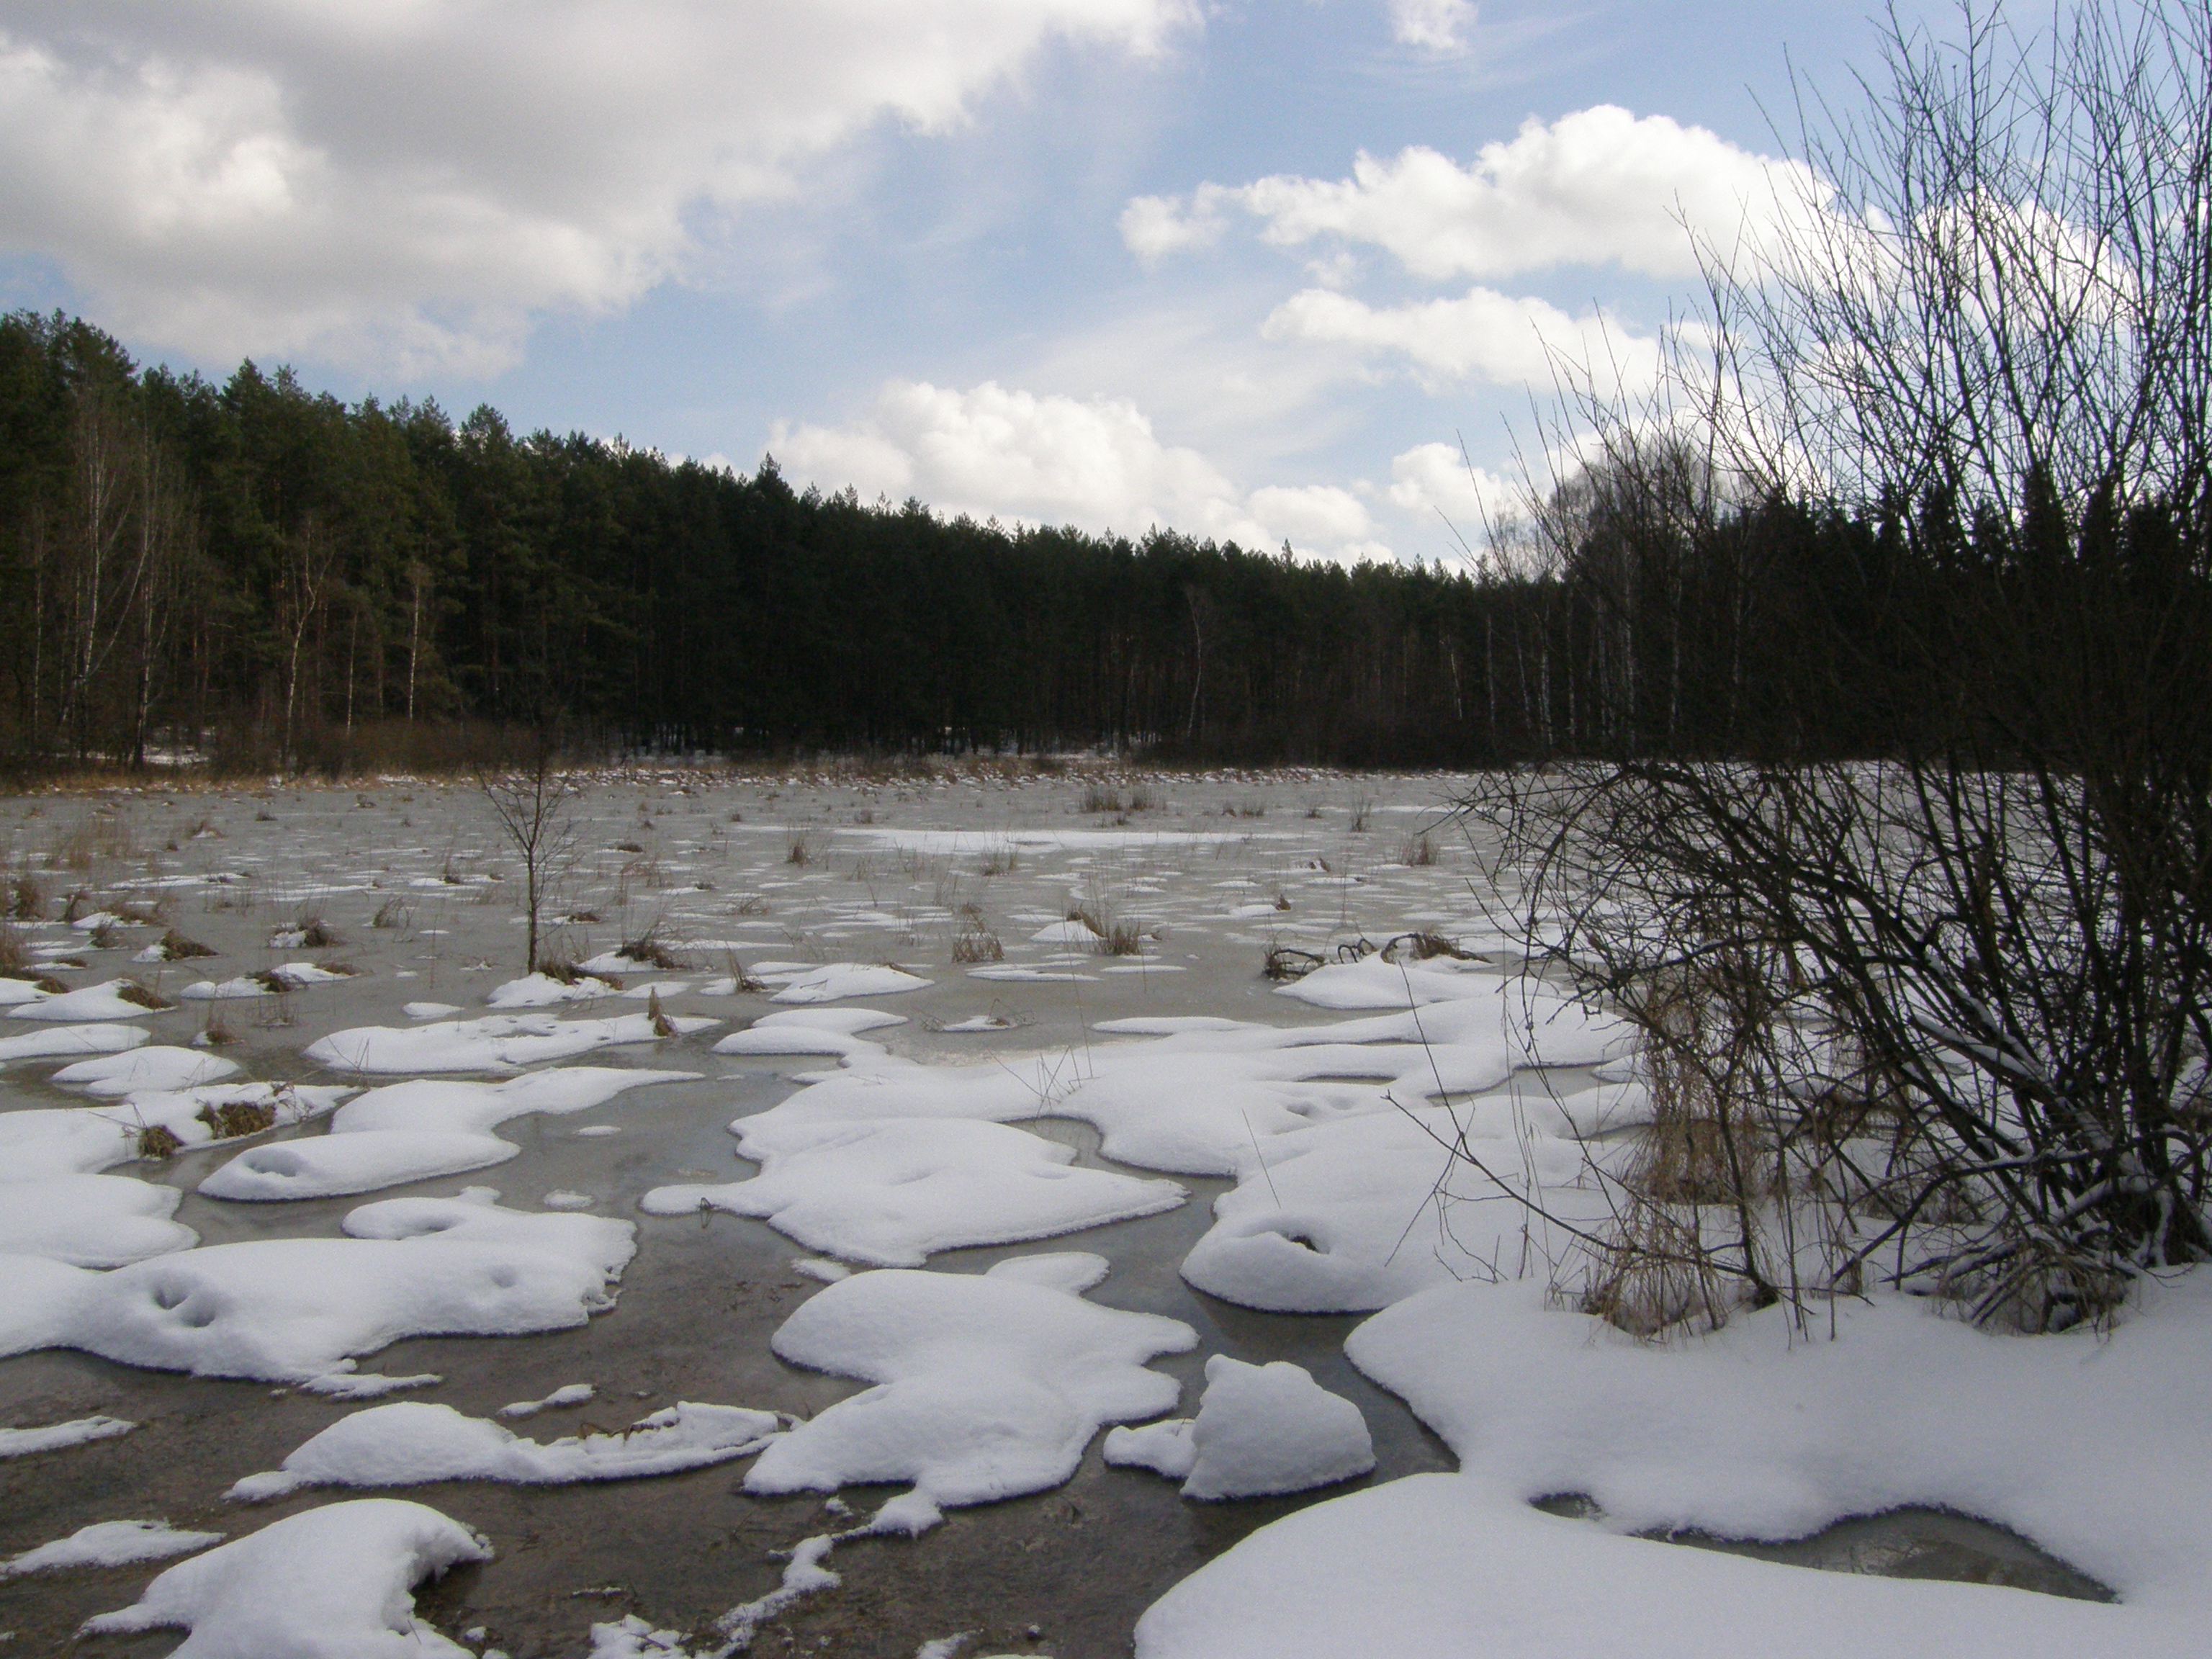  Fot. 1. Zalana dolina Wieprza w okresie wiosennych podtopień.